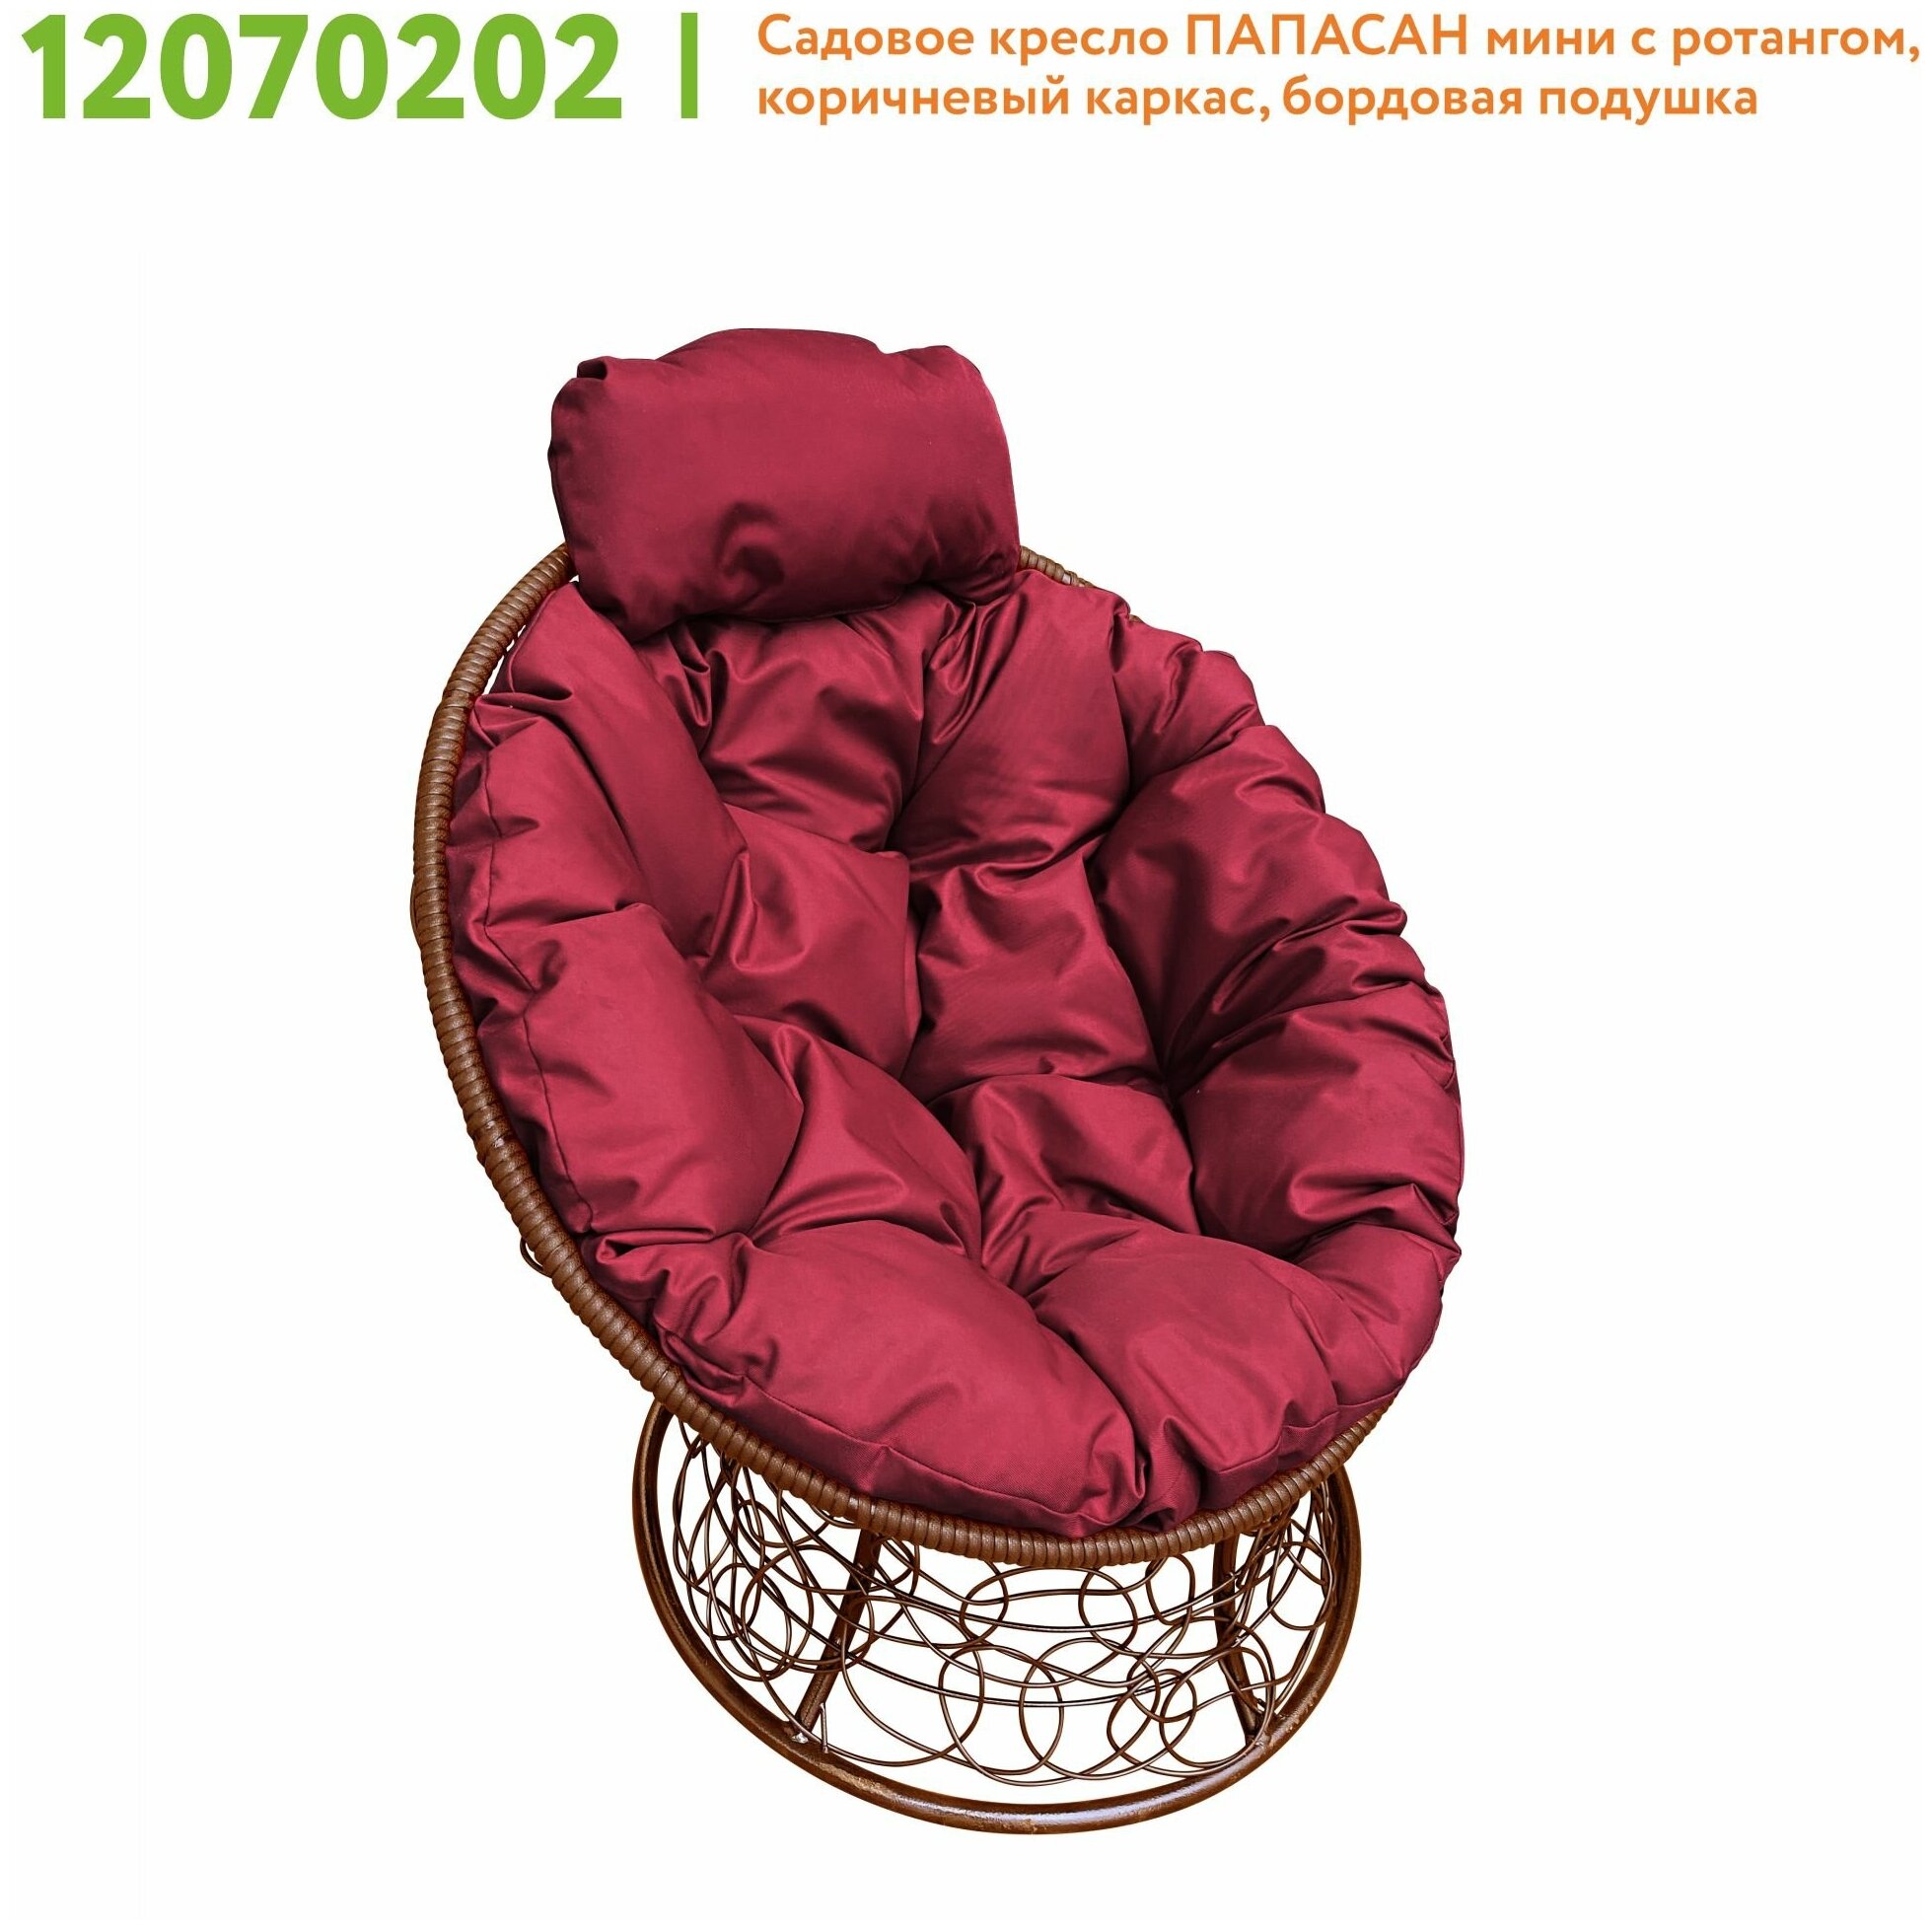 Кресло m-group папасан мини ротанг коричневое, бордовая подушка - фотография № 4